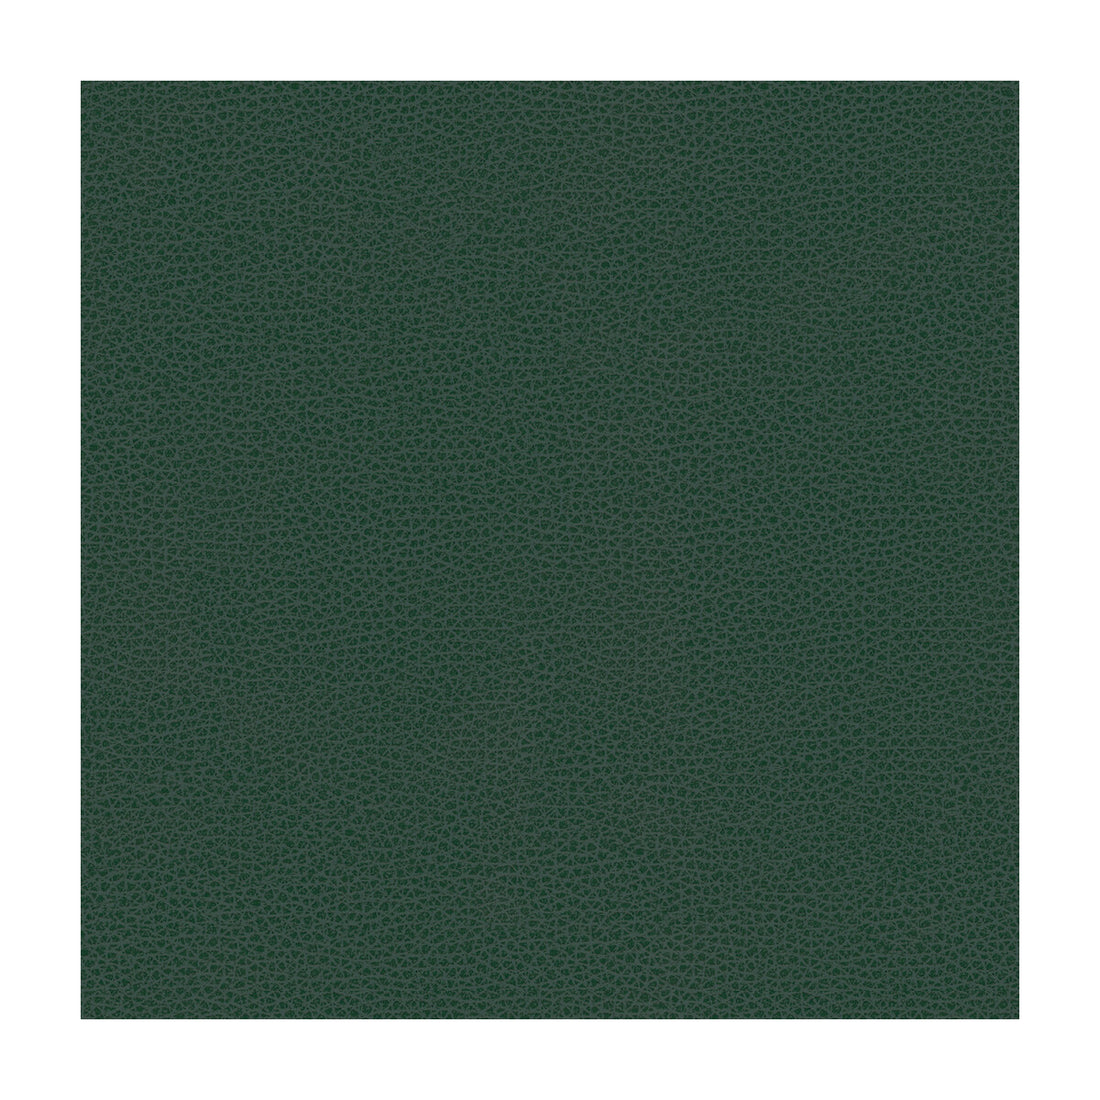 Kravet Design fabric in rigel-5 color - pattern RIGEL.5.0 - by Kravet Design